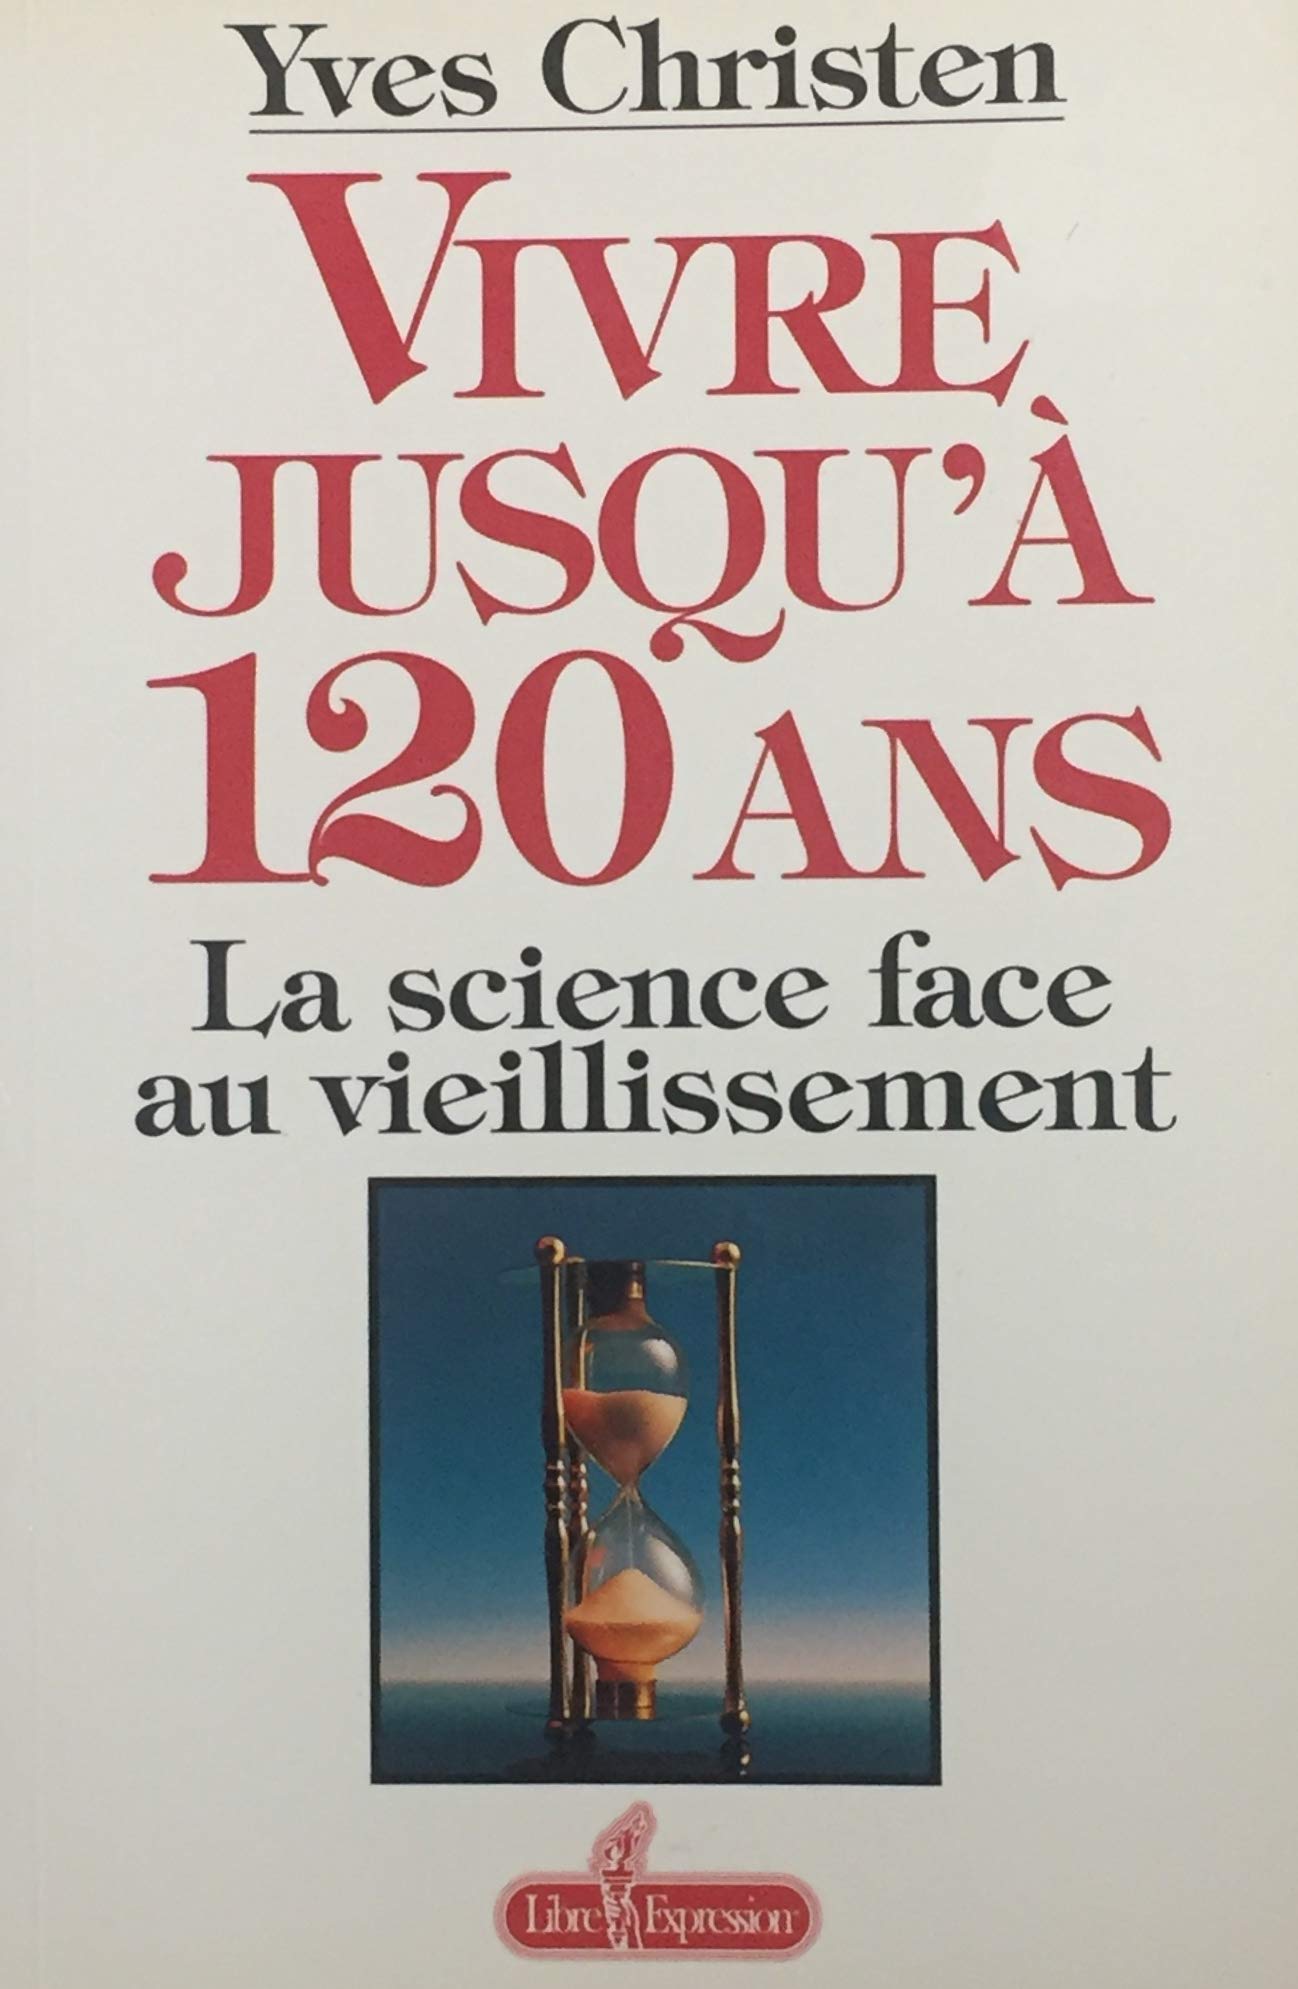 Livre ISBN 2891116070 Vivre jusqu'à 120 ans : La science face au vieillissement (Yves Christen)